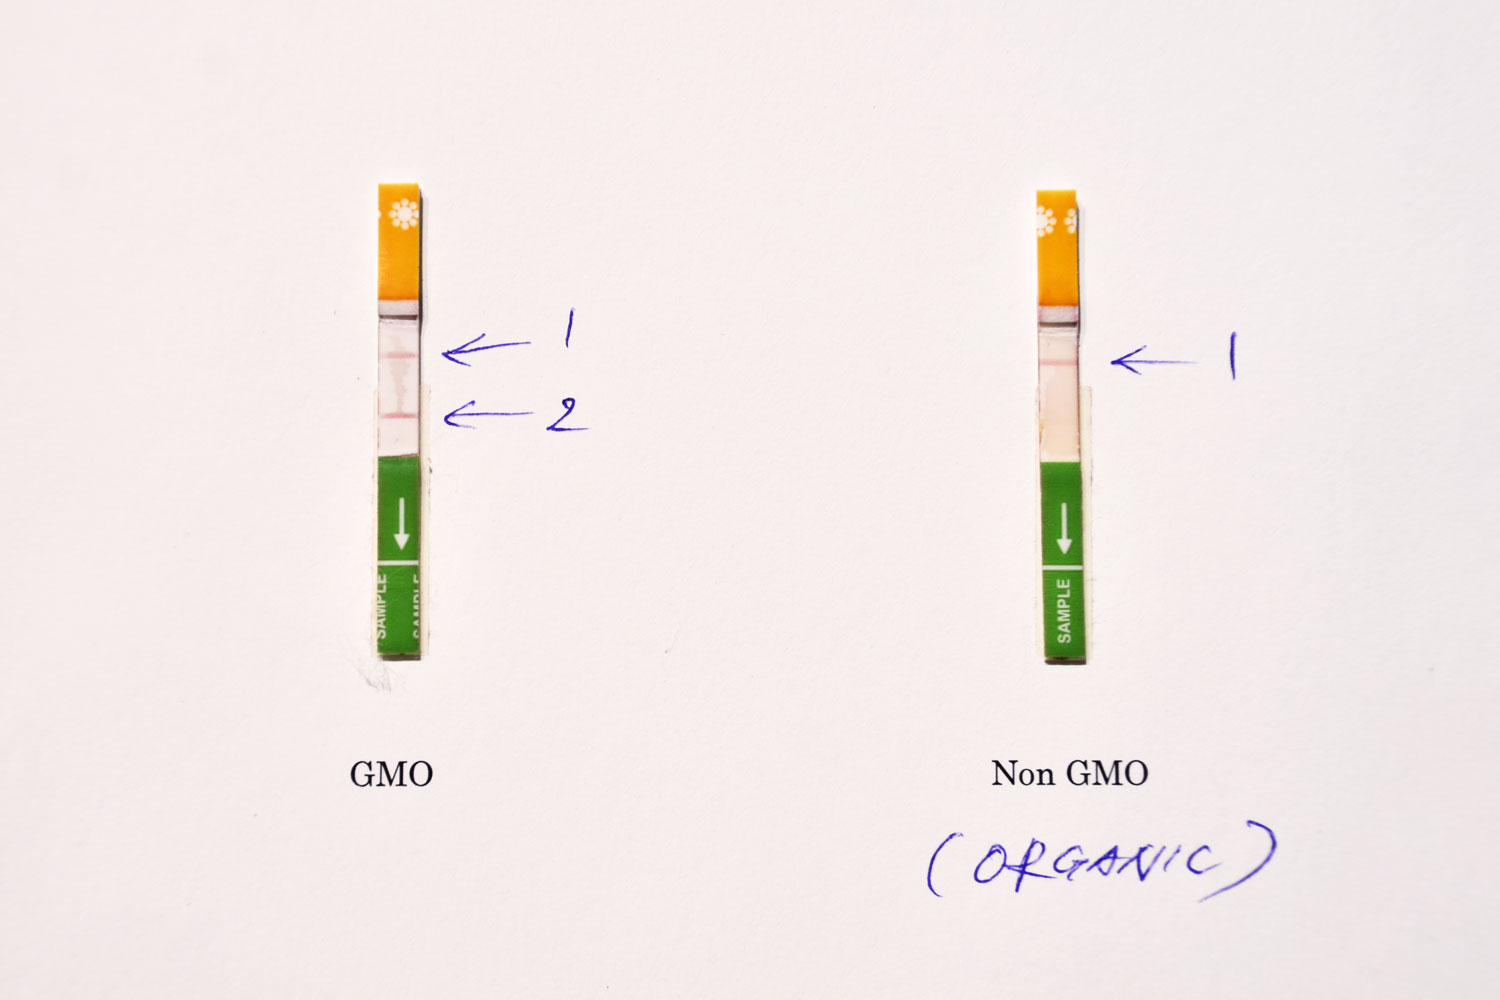 bioRe®の生産現場では、遺伝子組換え（GMO）種が紛れ込まないよう、栽培の各段階でチェックしている。 セミナー中、笑いを誘ったのは、bioRe®が採用する「種がNon-GMOかGMOか調べる方法」について。 皮肉にも、チェックに使用するキットは、GMO種の世界的種メーカー・モンサント社のもの。 「まるで妊娠検査薬ですよ」とRawal氏が使い方を実演。 種を粉末状にして溶かした駅に専用の紙を漬けると、数分で線が浮き上がる。1本ならNon-GMO。2本ならGMO。 モンサント社が、自社のGMO種かどうかを確認するために開発された。